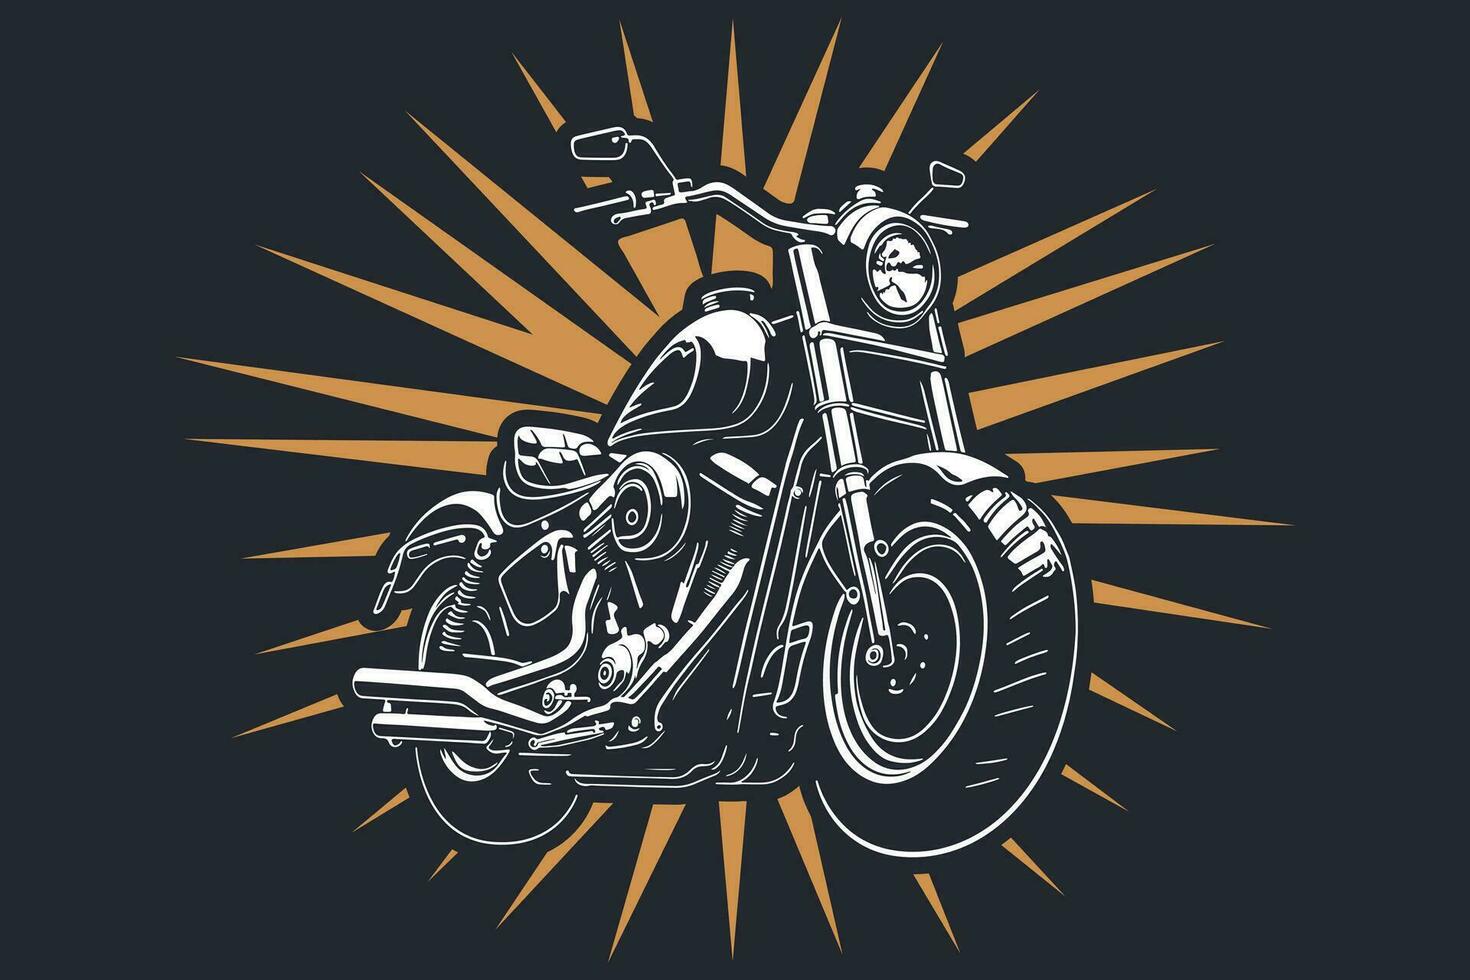 klassisk motorcykel vektor illustration. motor cykel för logotyp, cyklist klubb emblem, klistermärke, t skjorta design skriva ut.